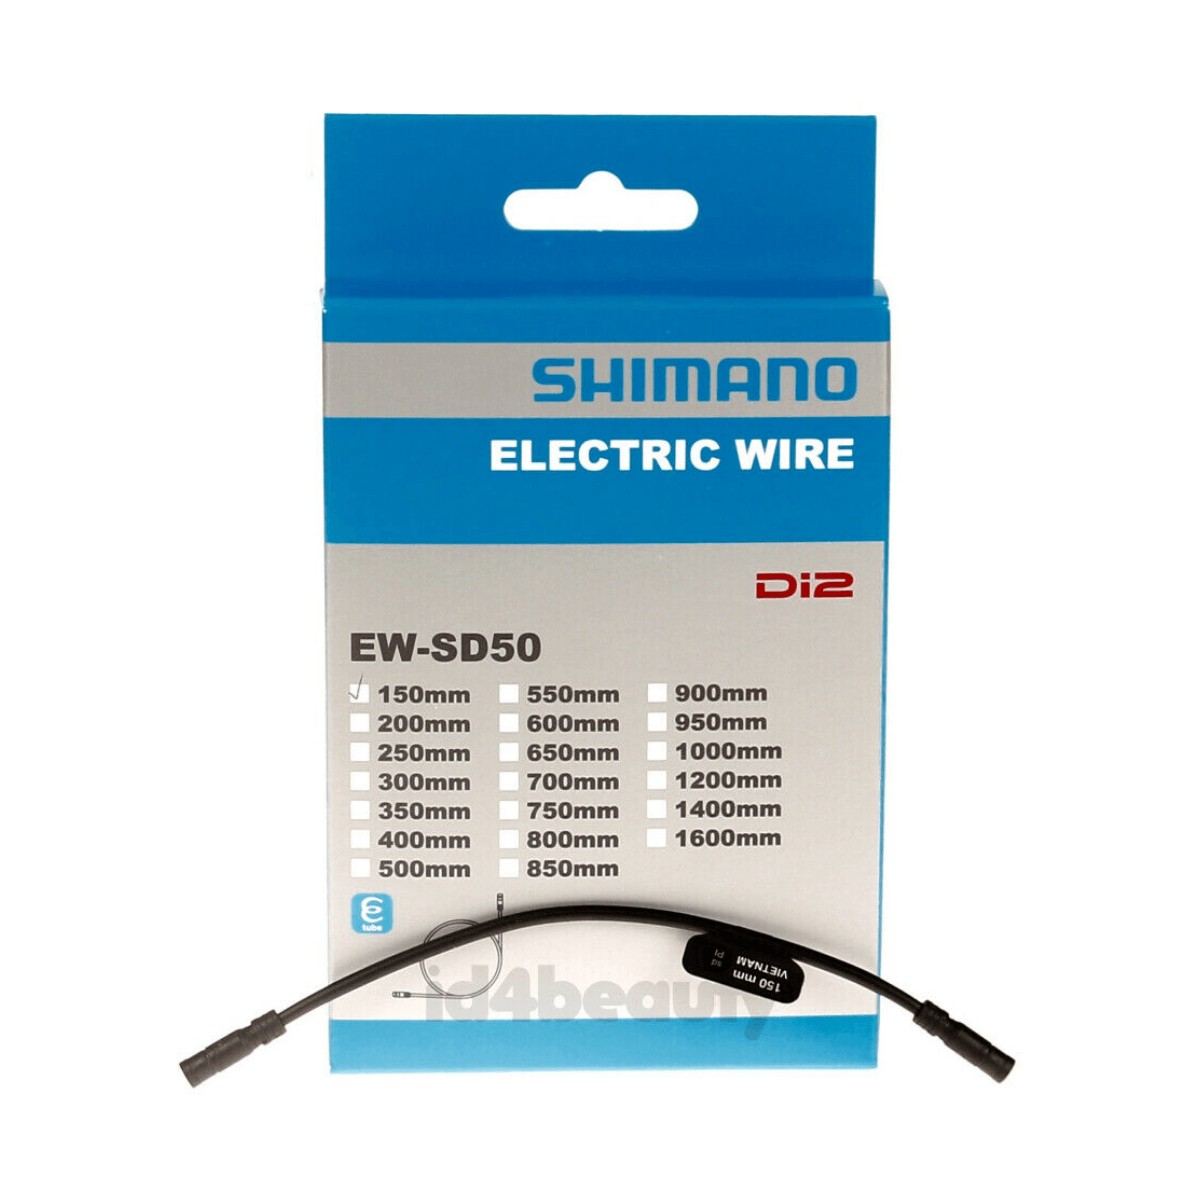 Cable Shimano DI2 EW-SD50 150mm